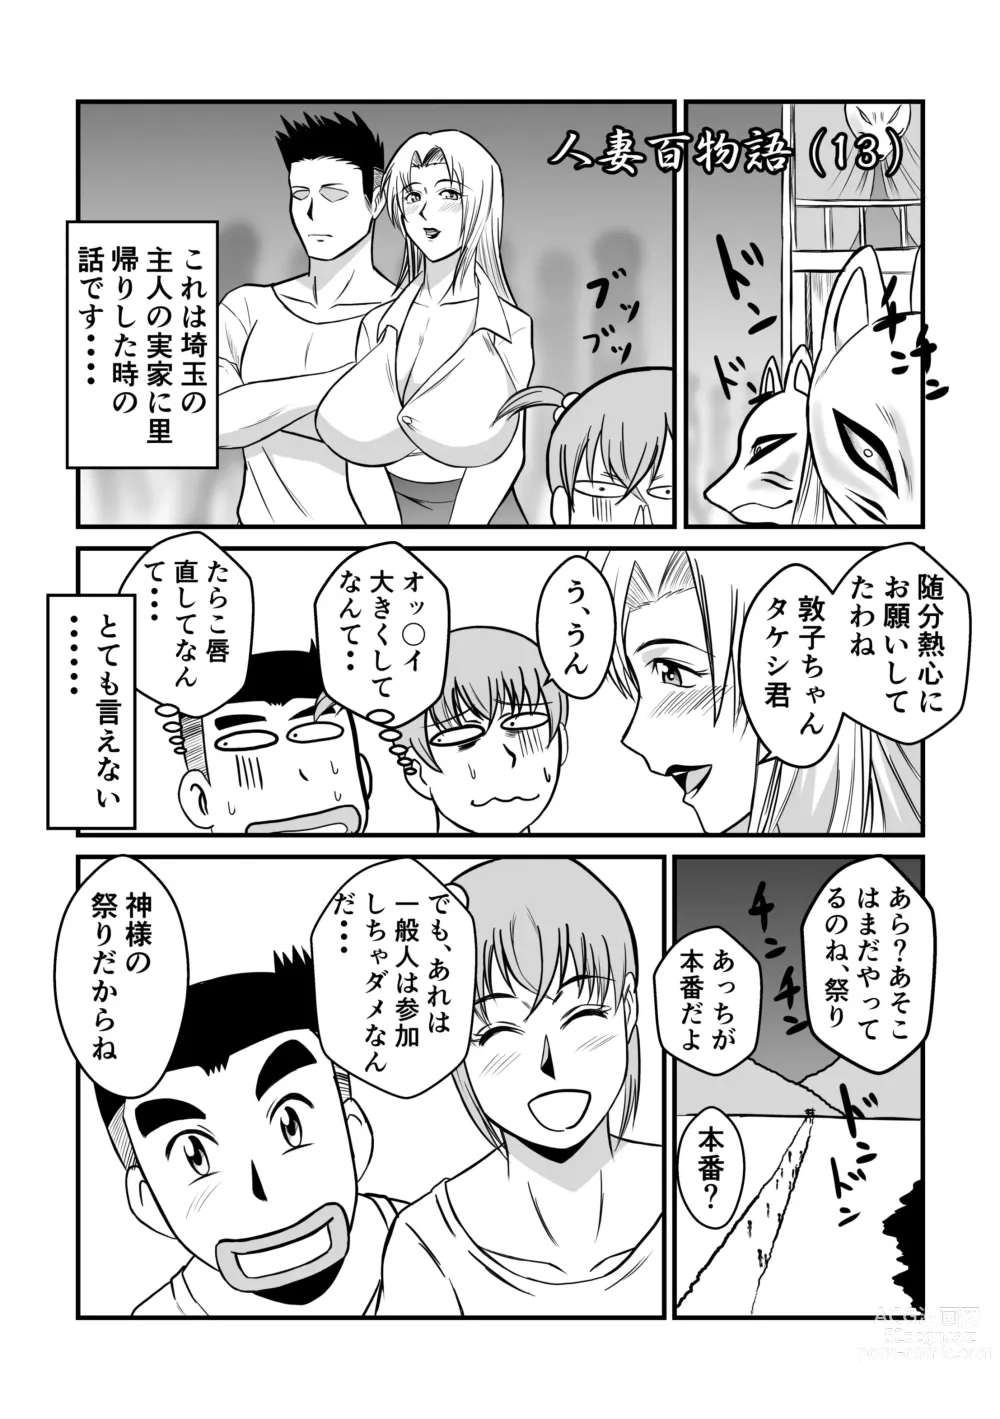 Page 7 of doujinshi Henna Hanashi #13